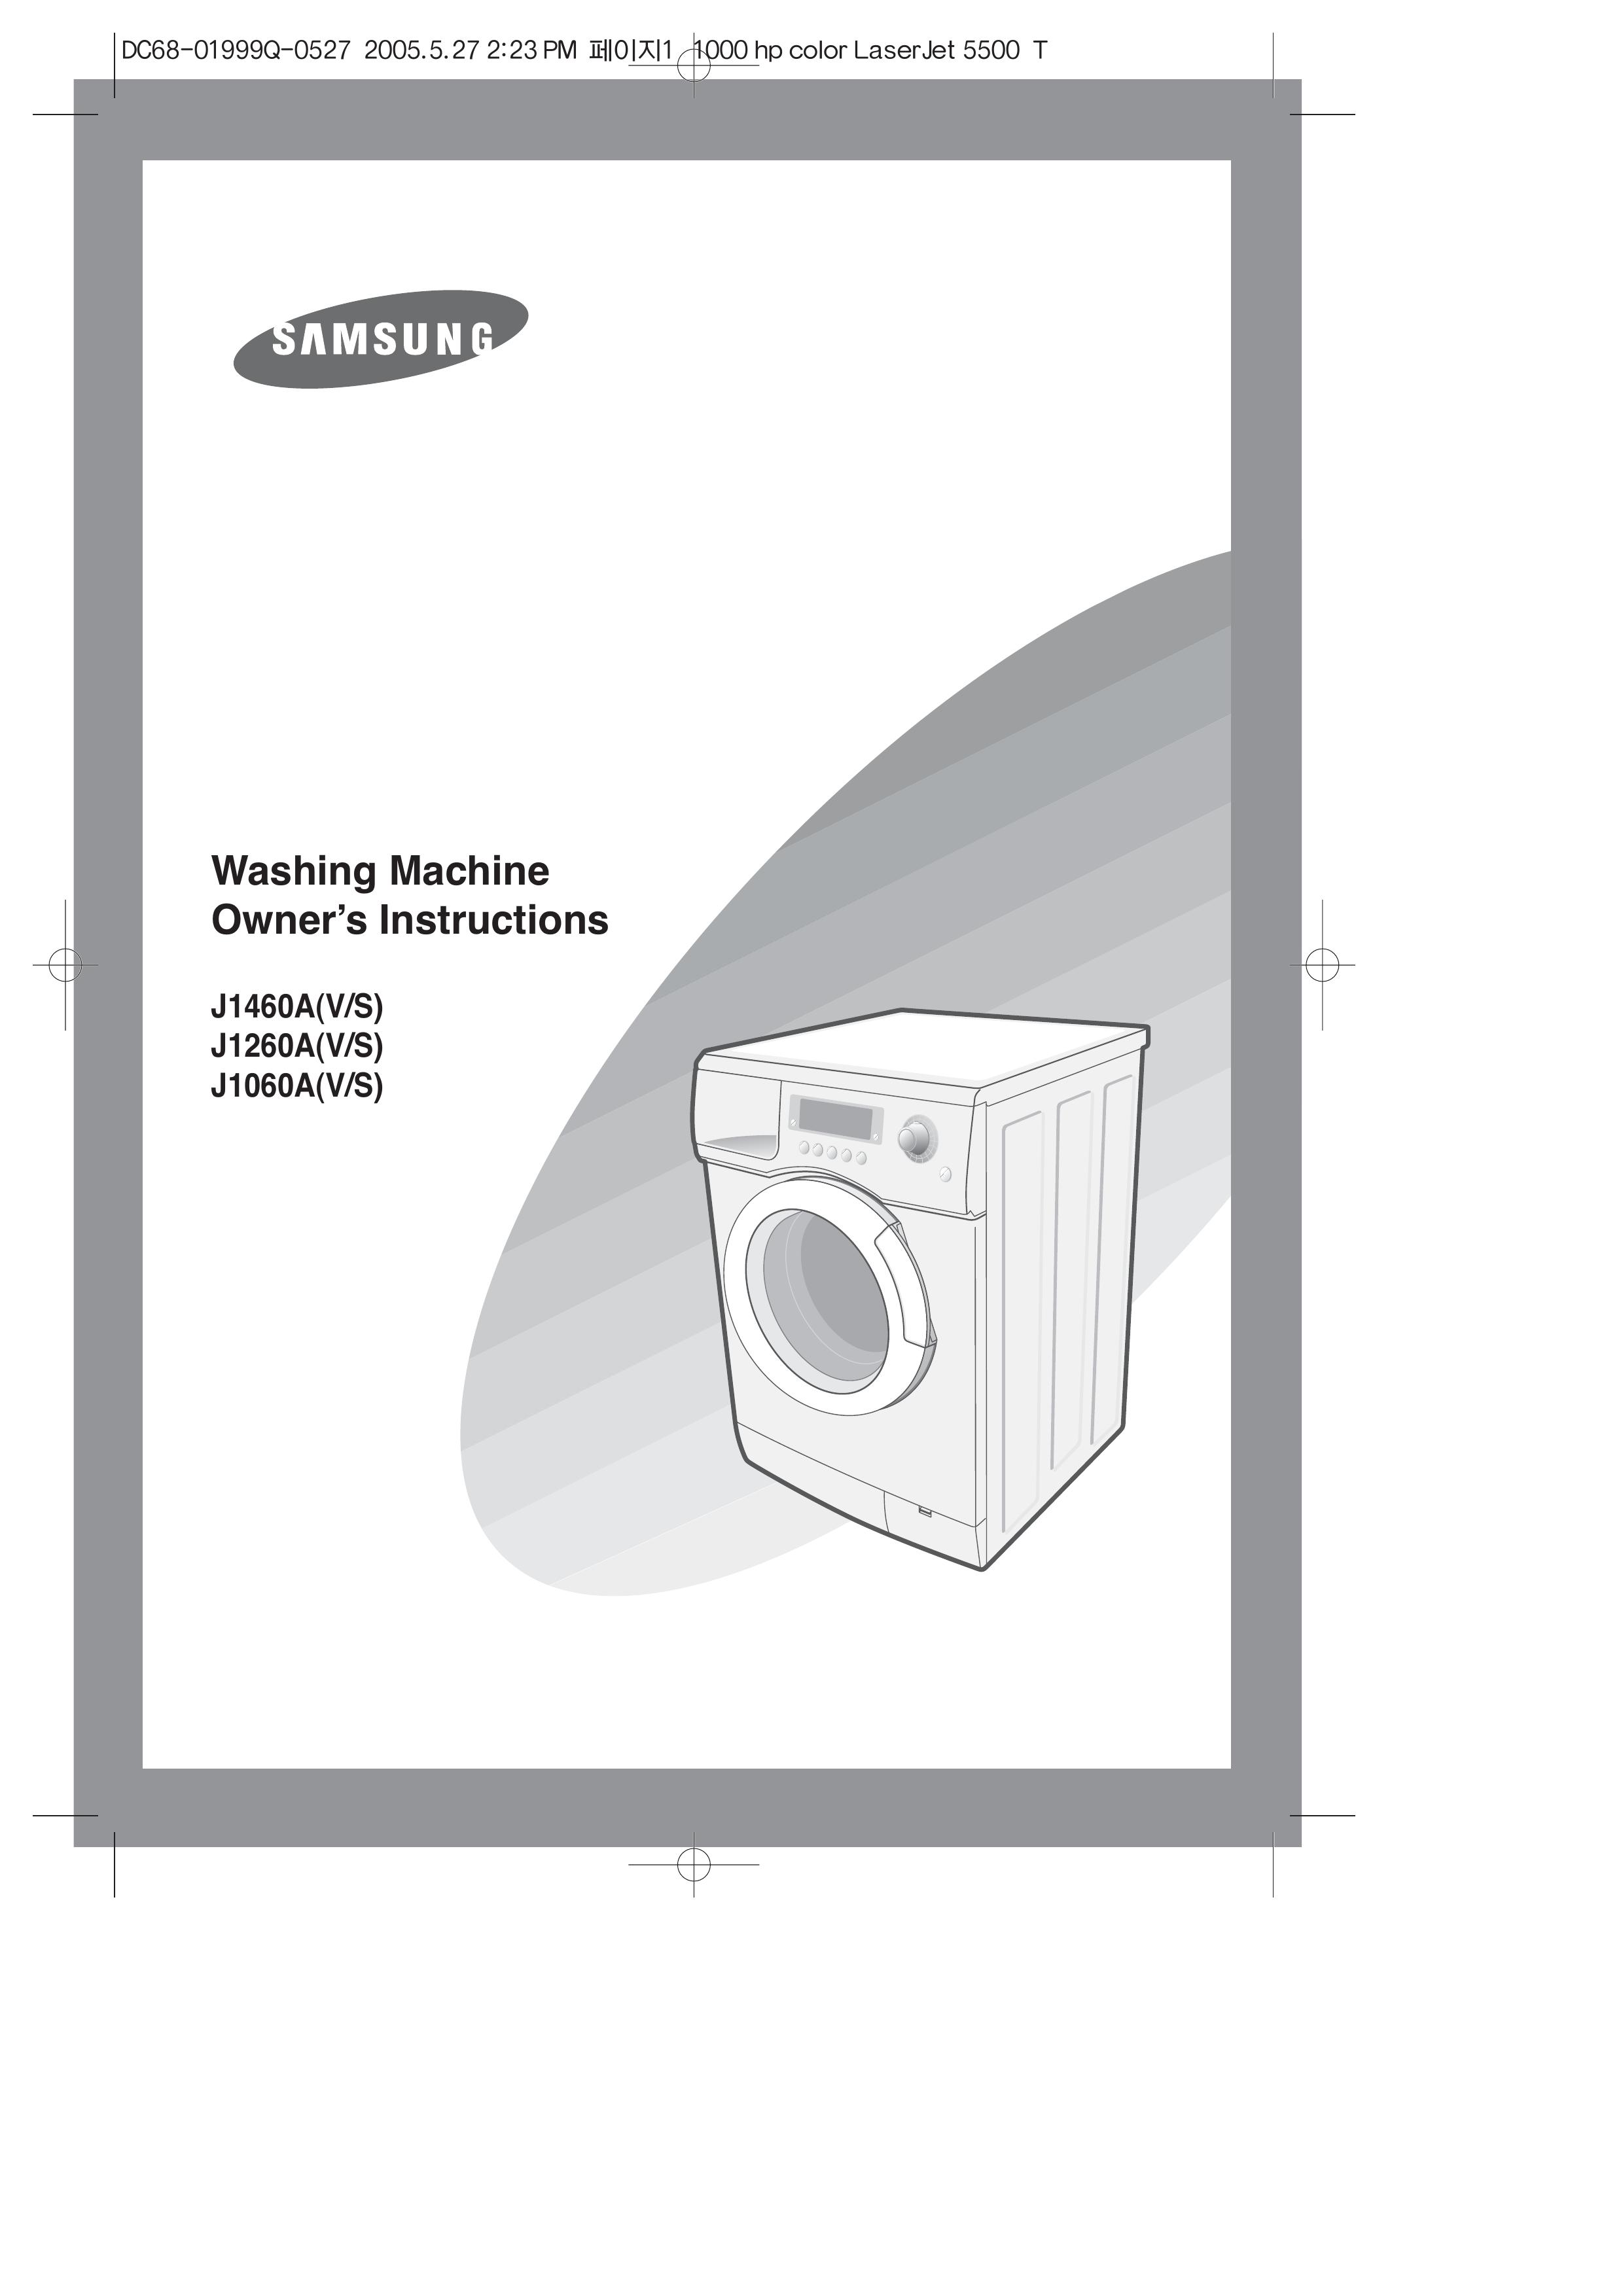 Samsung J1060A(V/S) Washer/Dryer User Manual